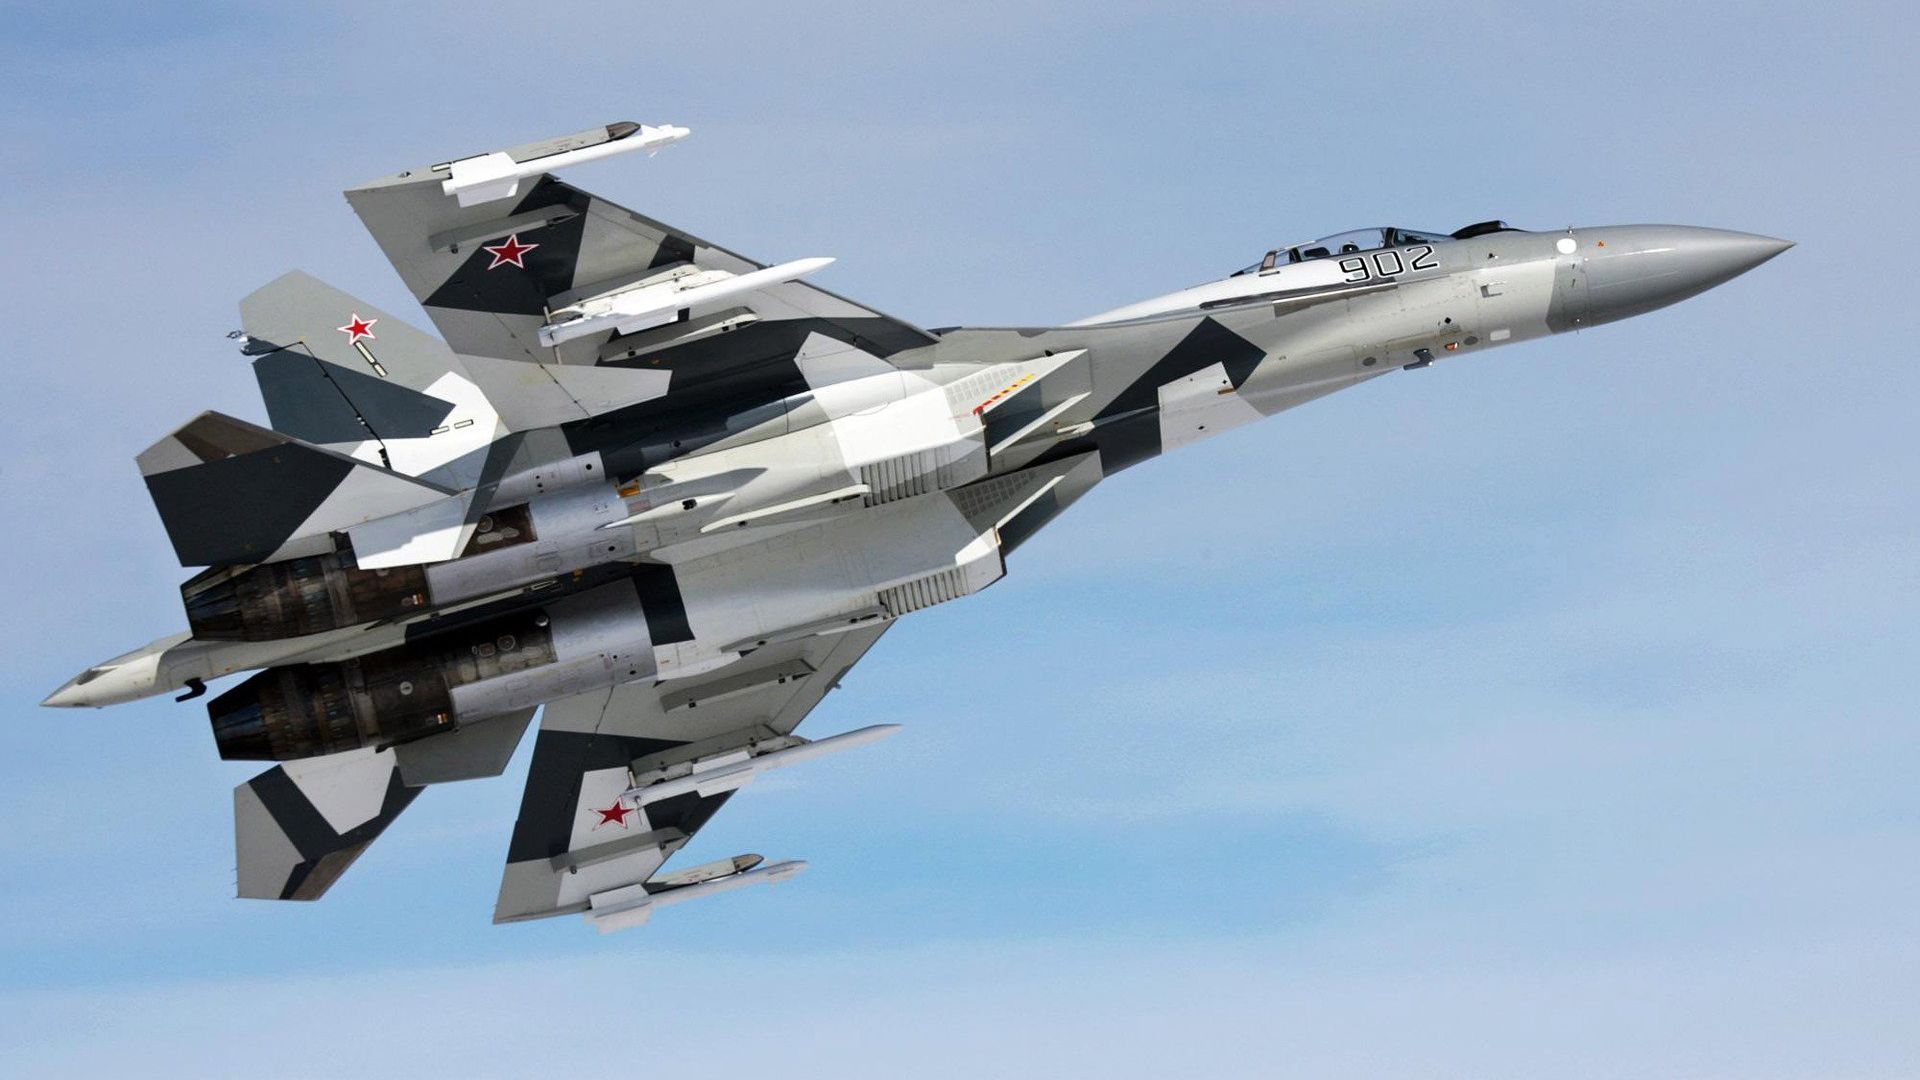 Два руски изтребителя Су 34 са се сблъскали в небето над